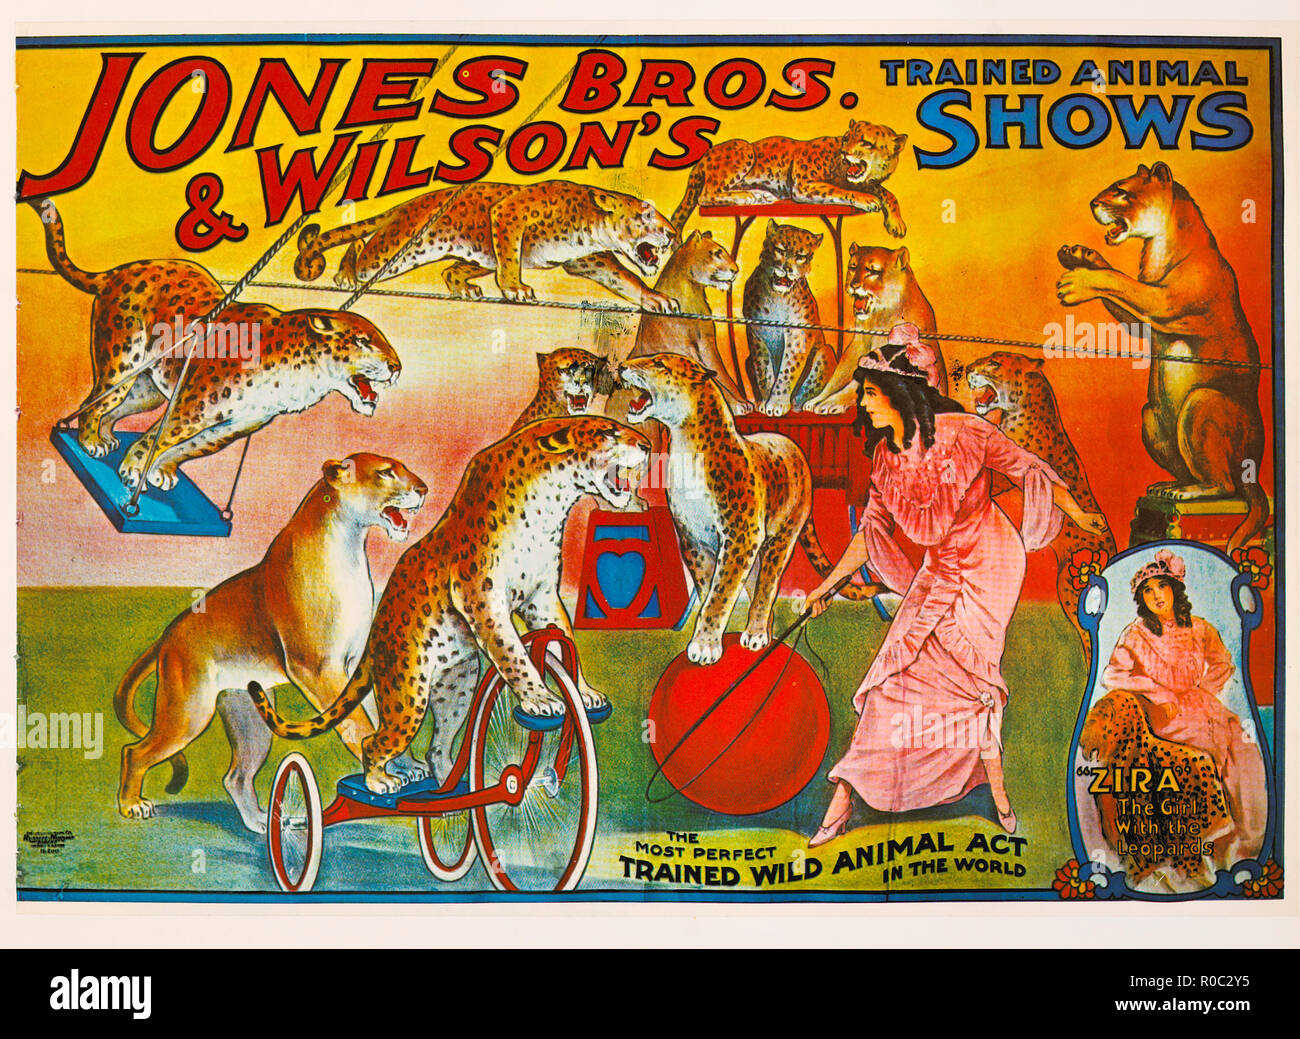 Jones Bros & Wilson's Ausgebildete Tier zeigt, 'Zira'das Mädchen mit dem Leoparden, Zirkus, Poster, Lithographie, 1914 Stockfoto